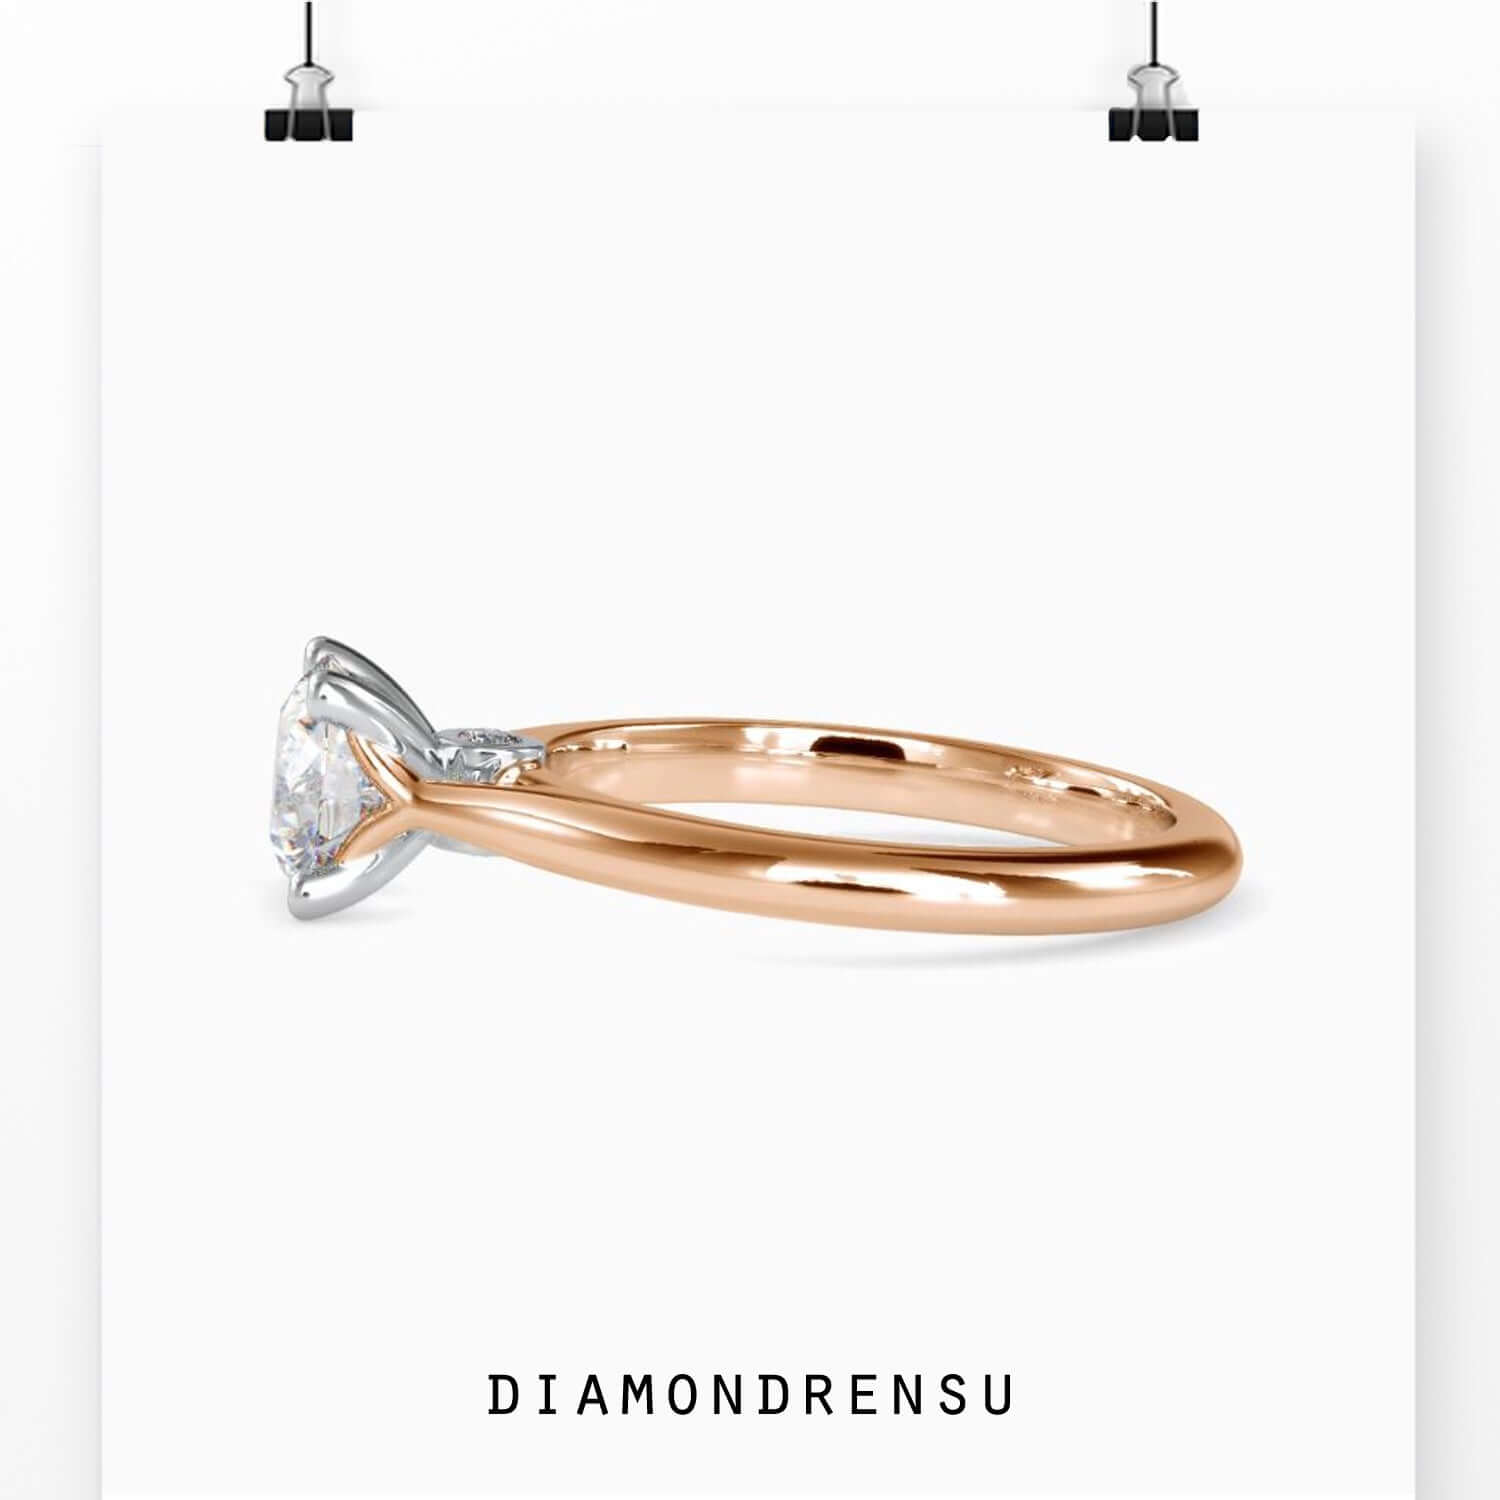 customized jewelry - diamondrensu